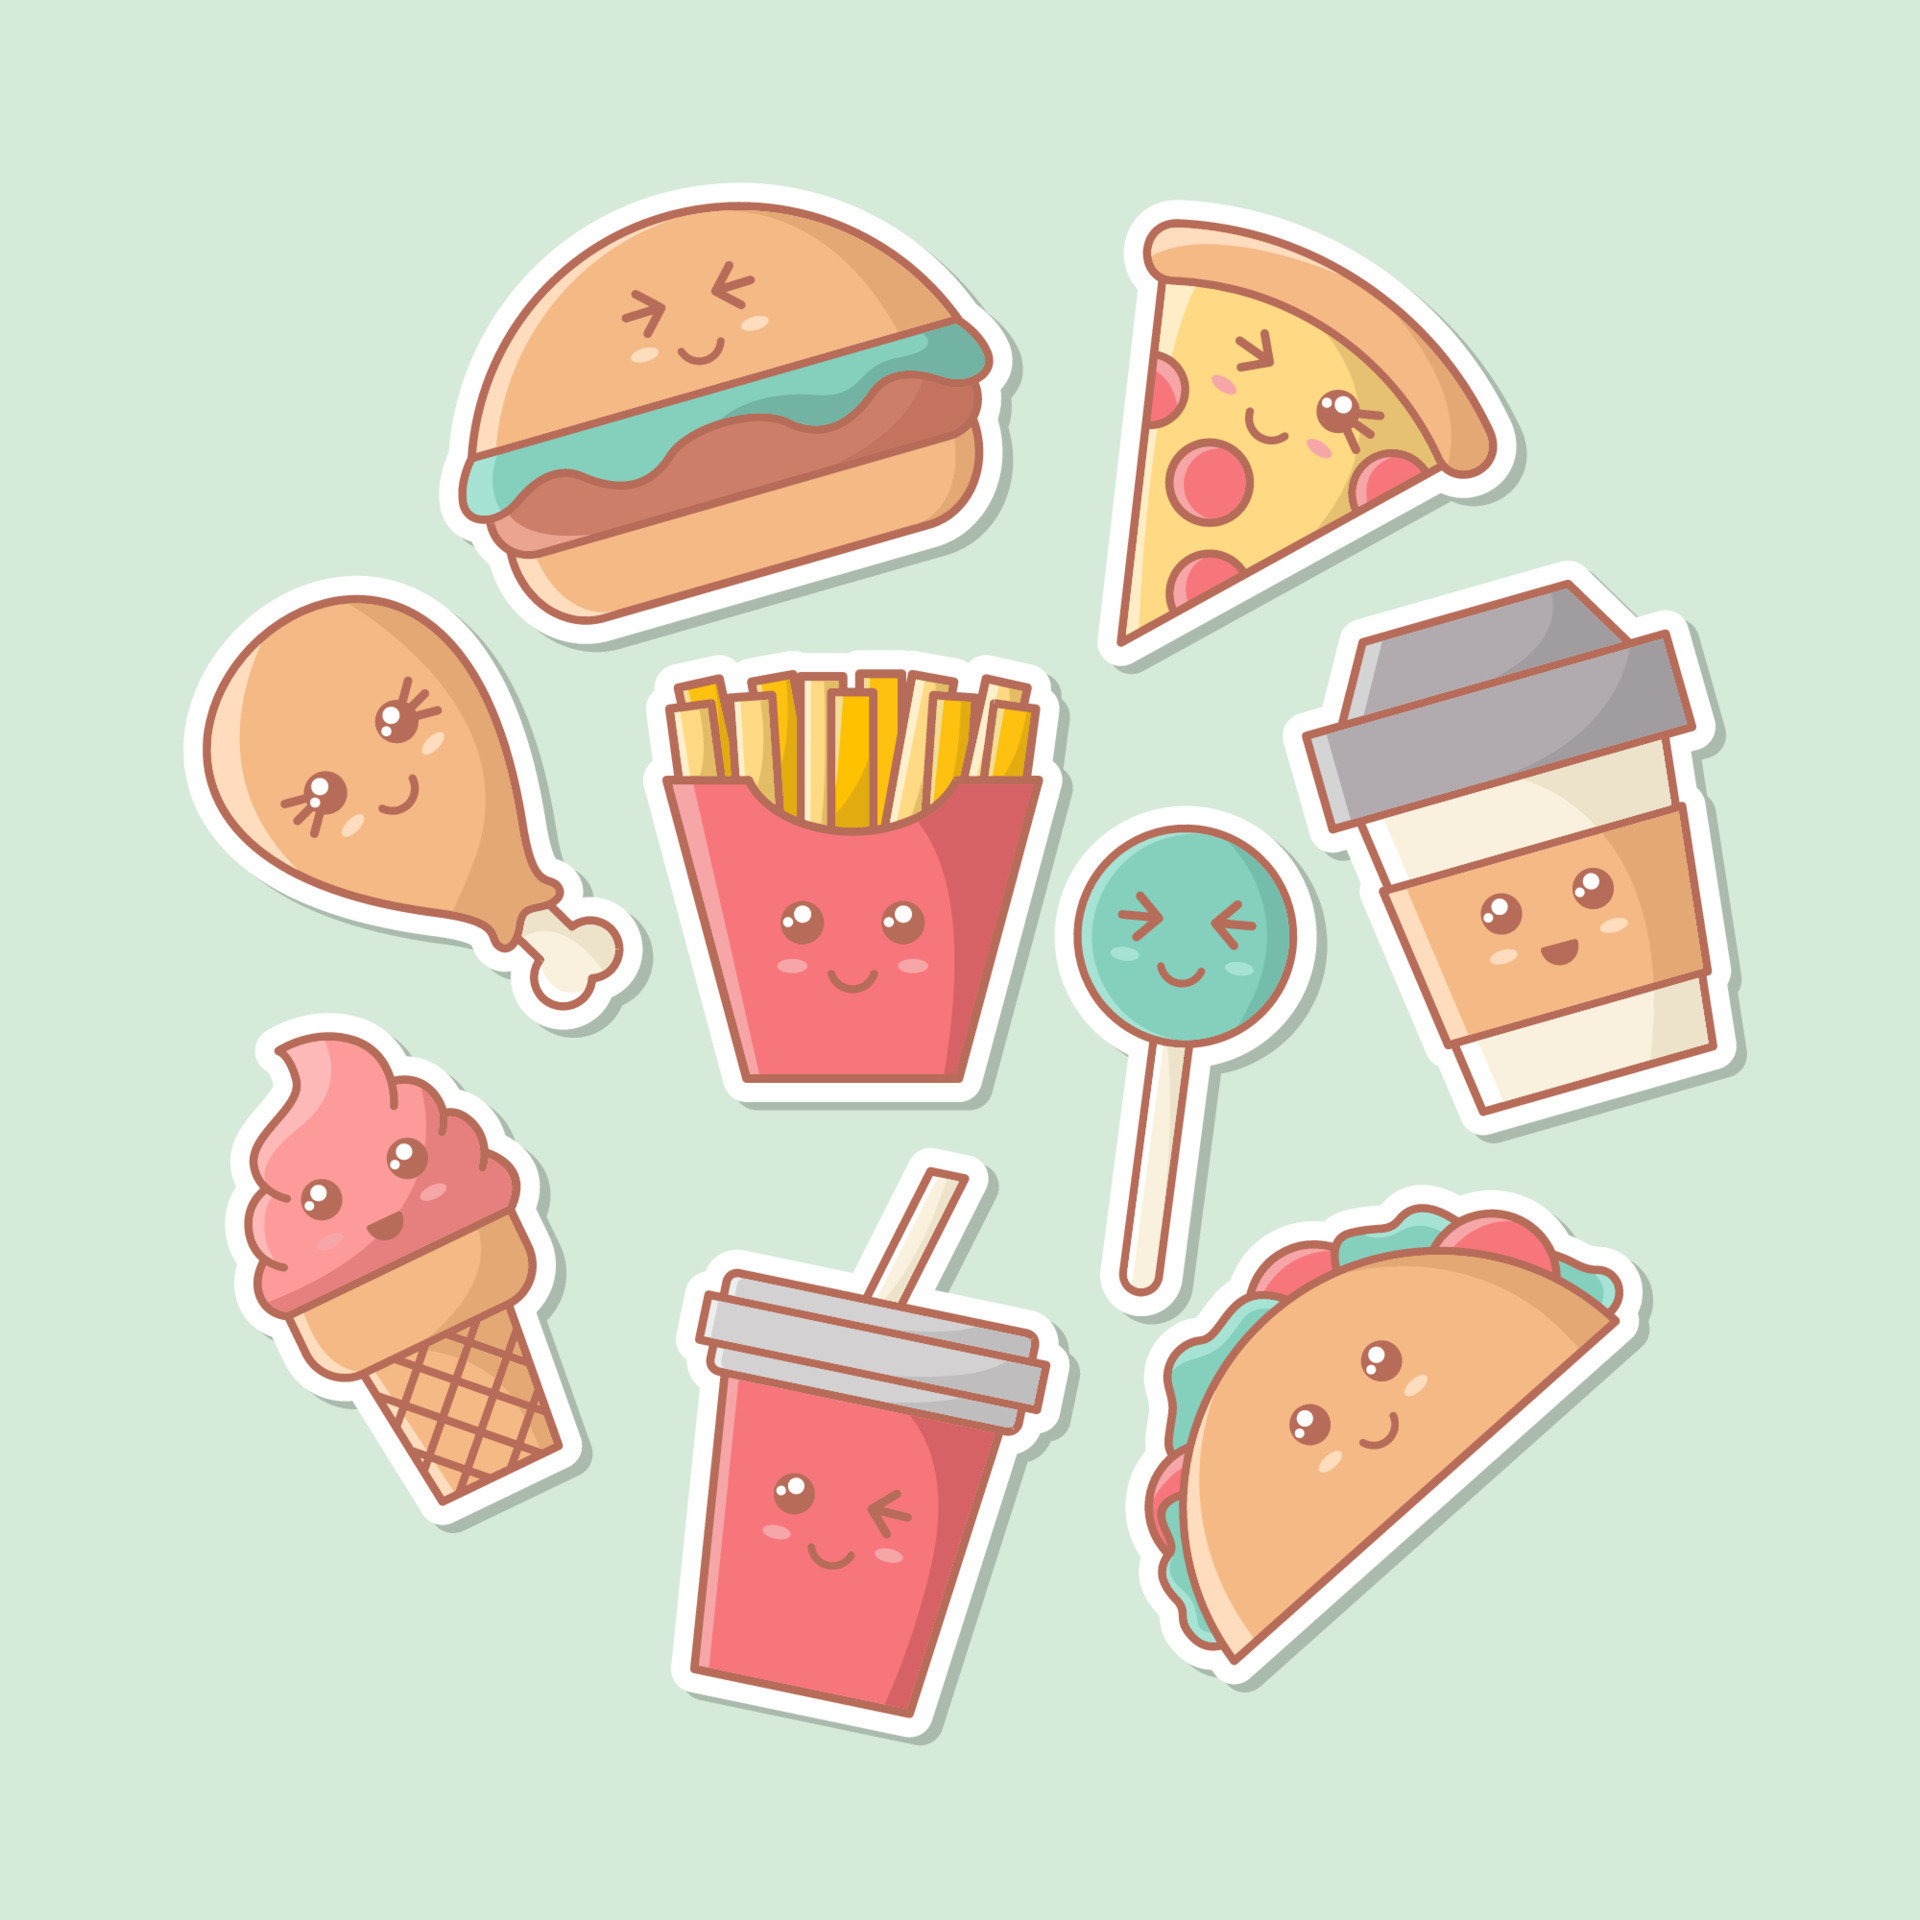 Cute Kawaii Food Cartoon Sticker Collection 11062524 Vector Art at Vecteezy